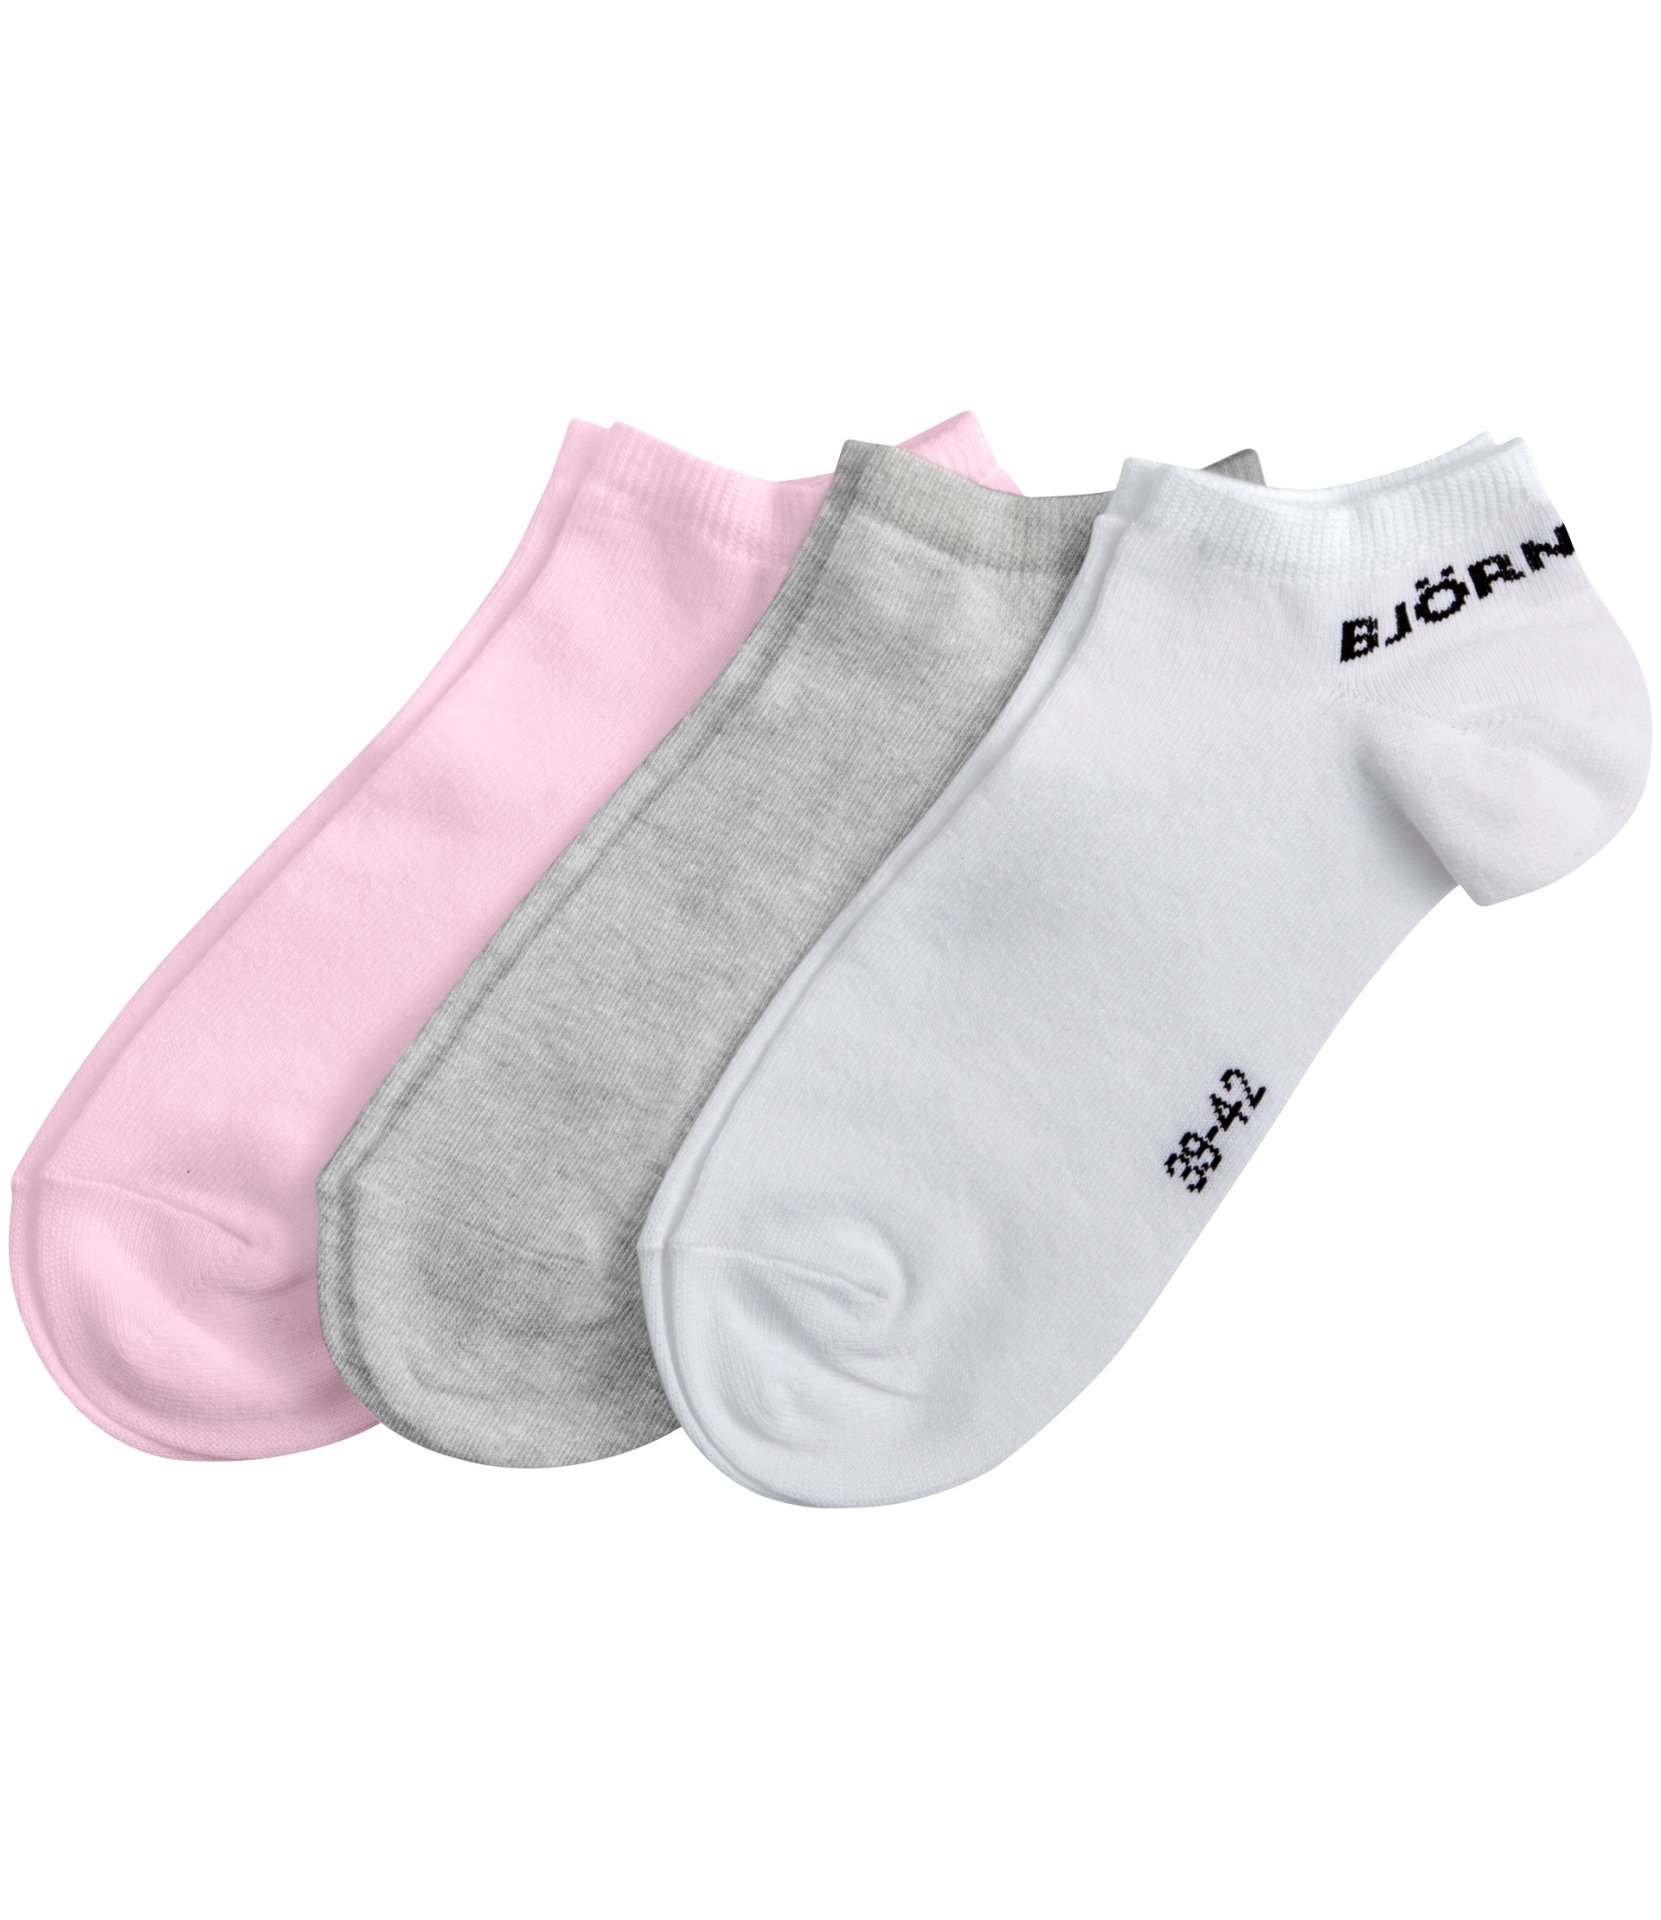 Ανδρικά/Αξεσουάρ/Κάλτσες BJORN BORG - Ανδρικές κάλτσες σετ των 3 BJORN BORG γκρι λευκό ροζ